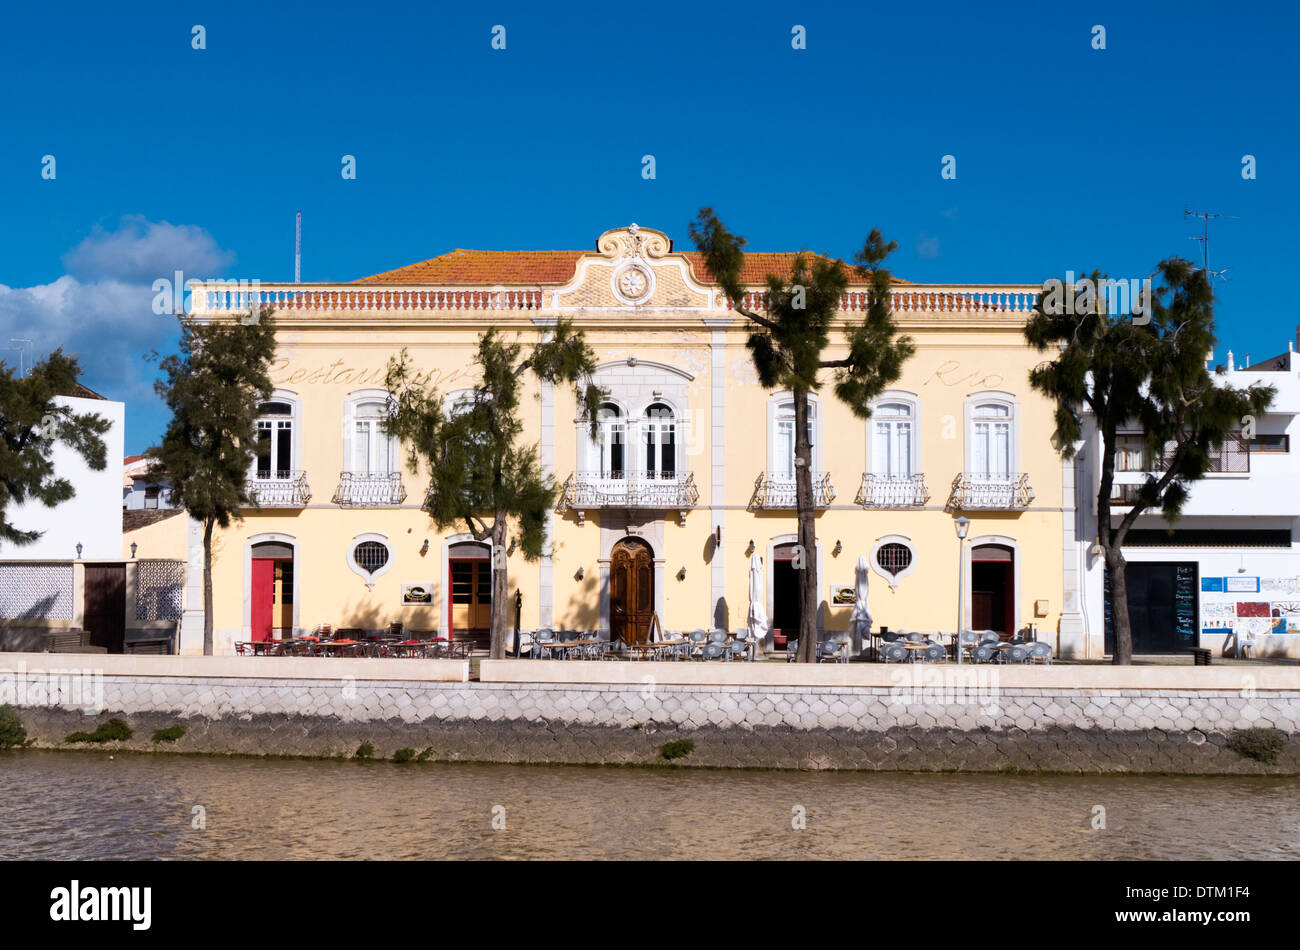 Restaurante Beira Rio, Rua Borda d'Agua da Asseca, Tavira, Algarve, Portugal, February 2014 Stock Photo